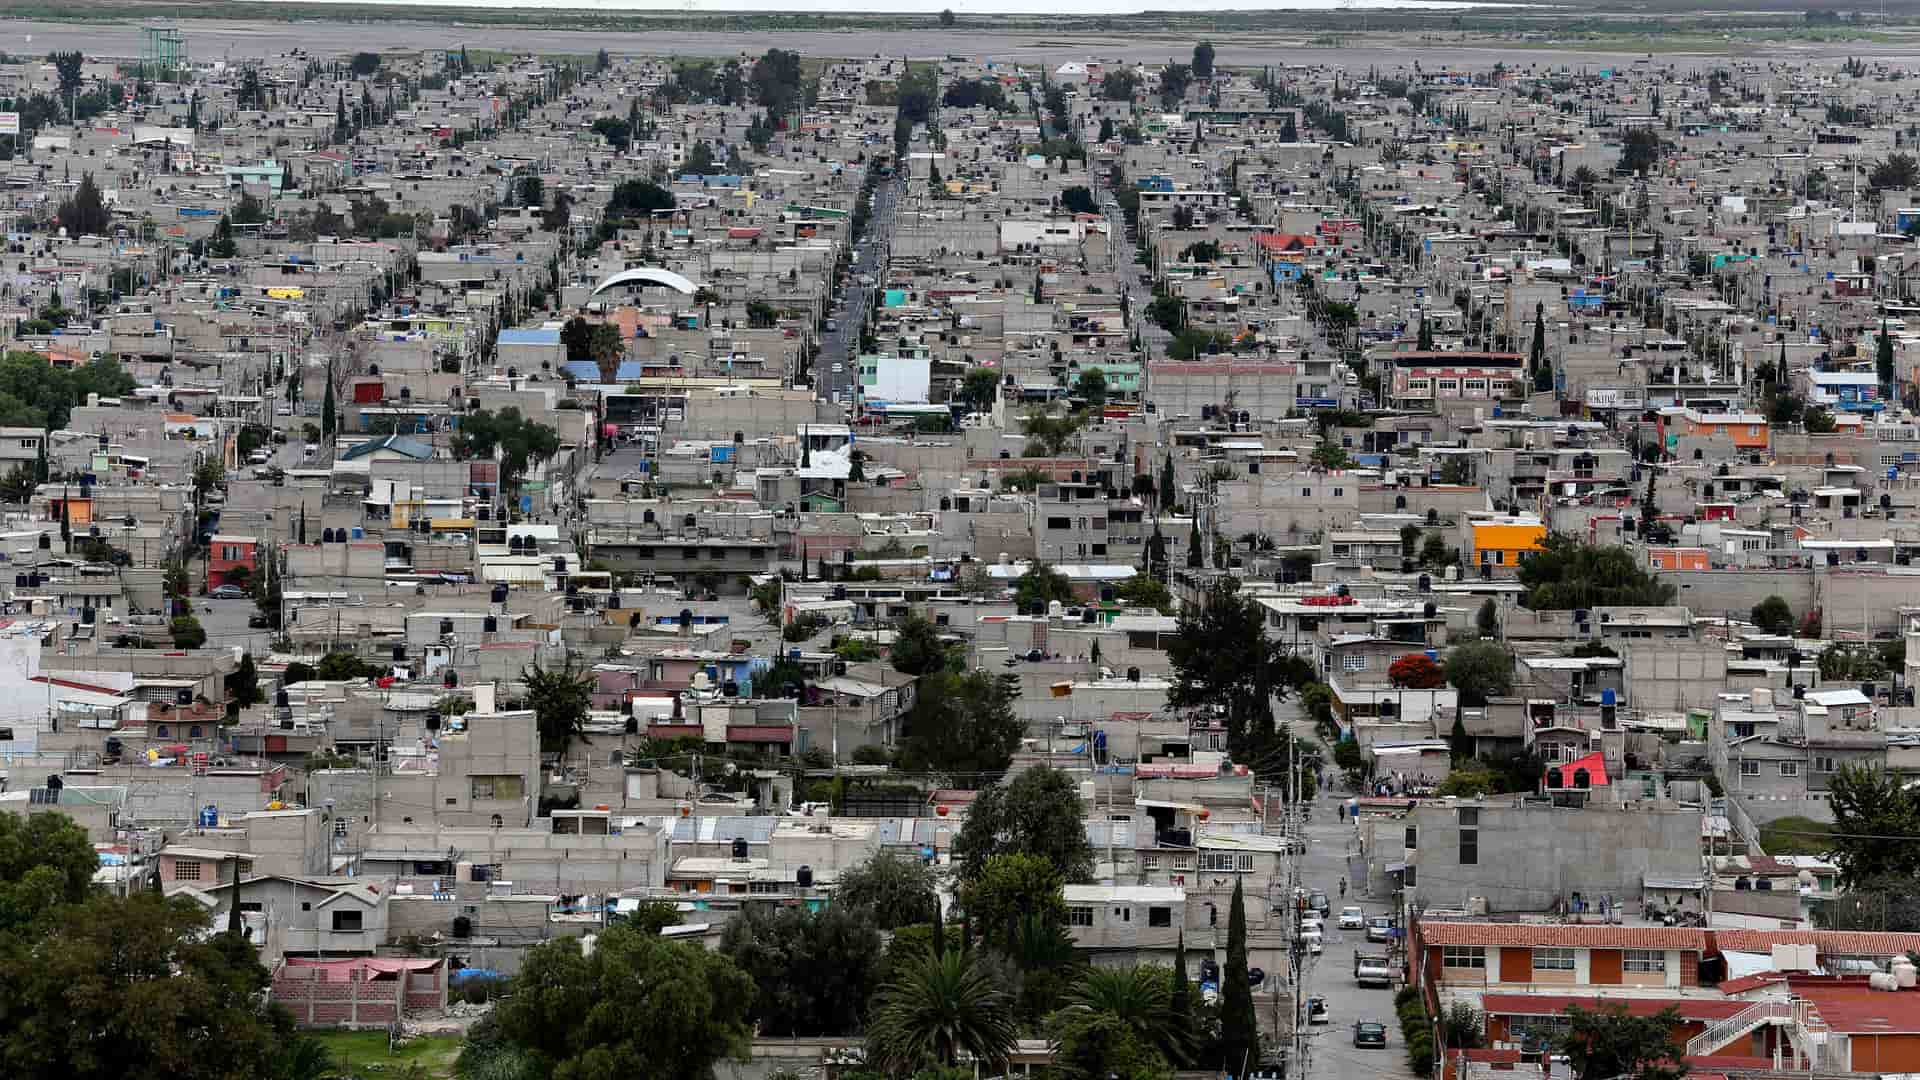 ciudad de chimalhuacan vista desde el aire para representar las sucursales de movistar en esa localidad